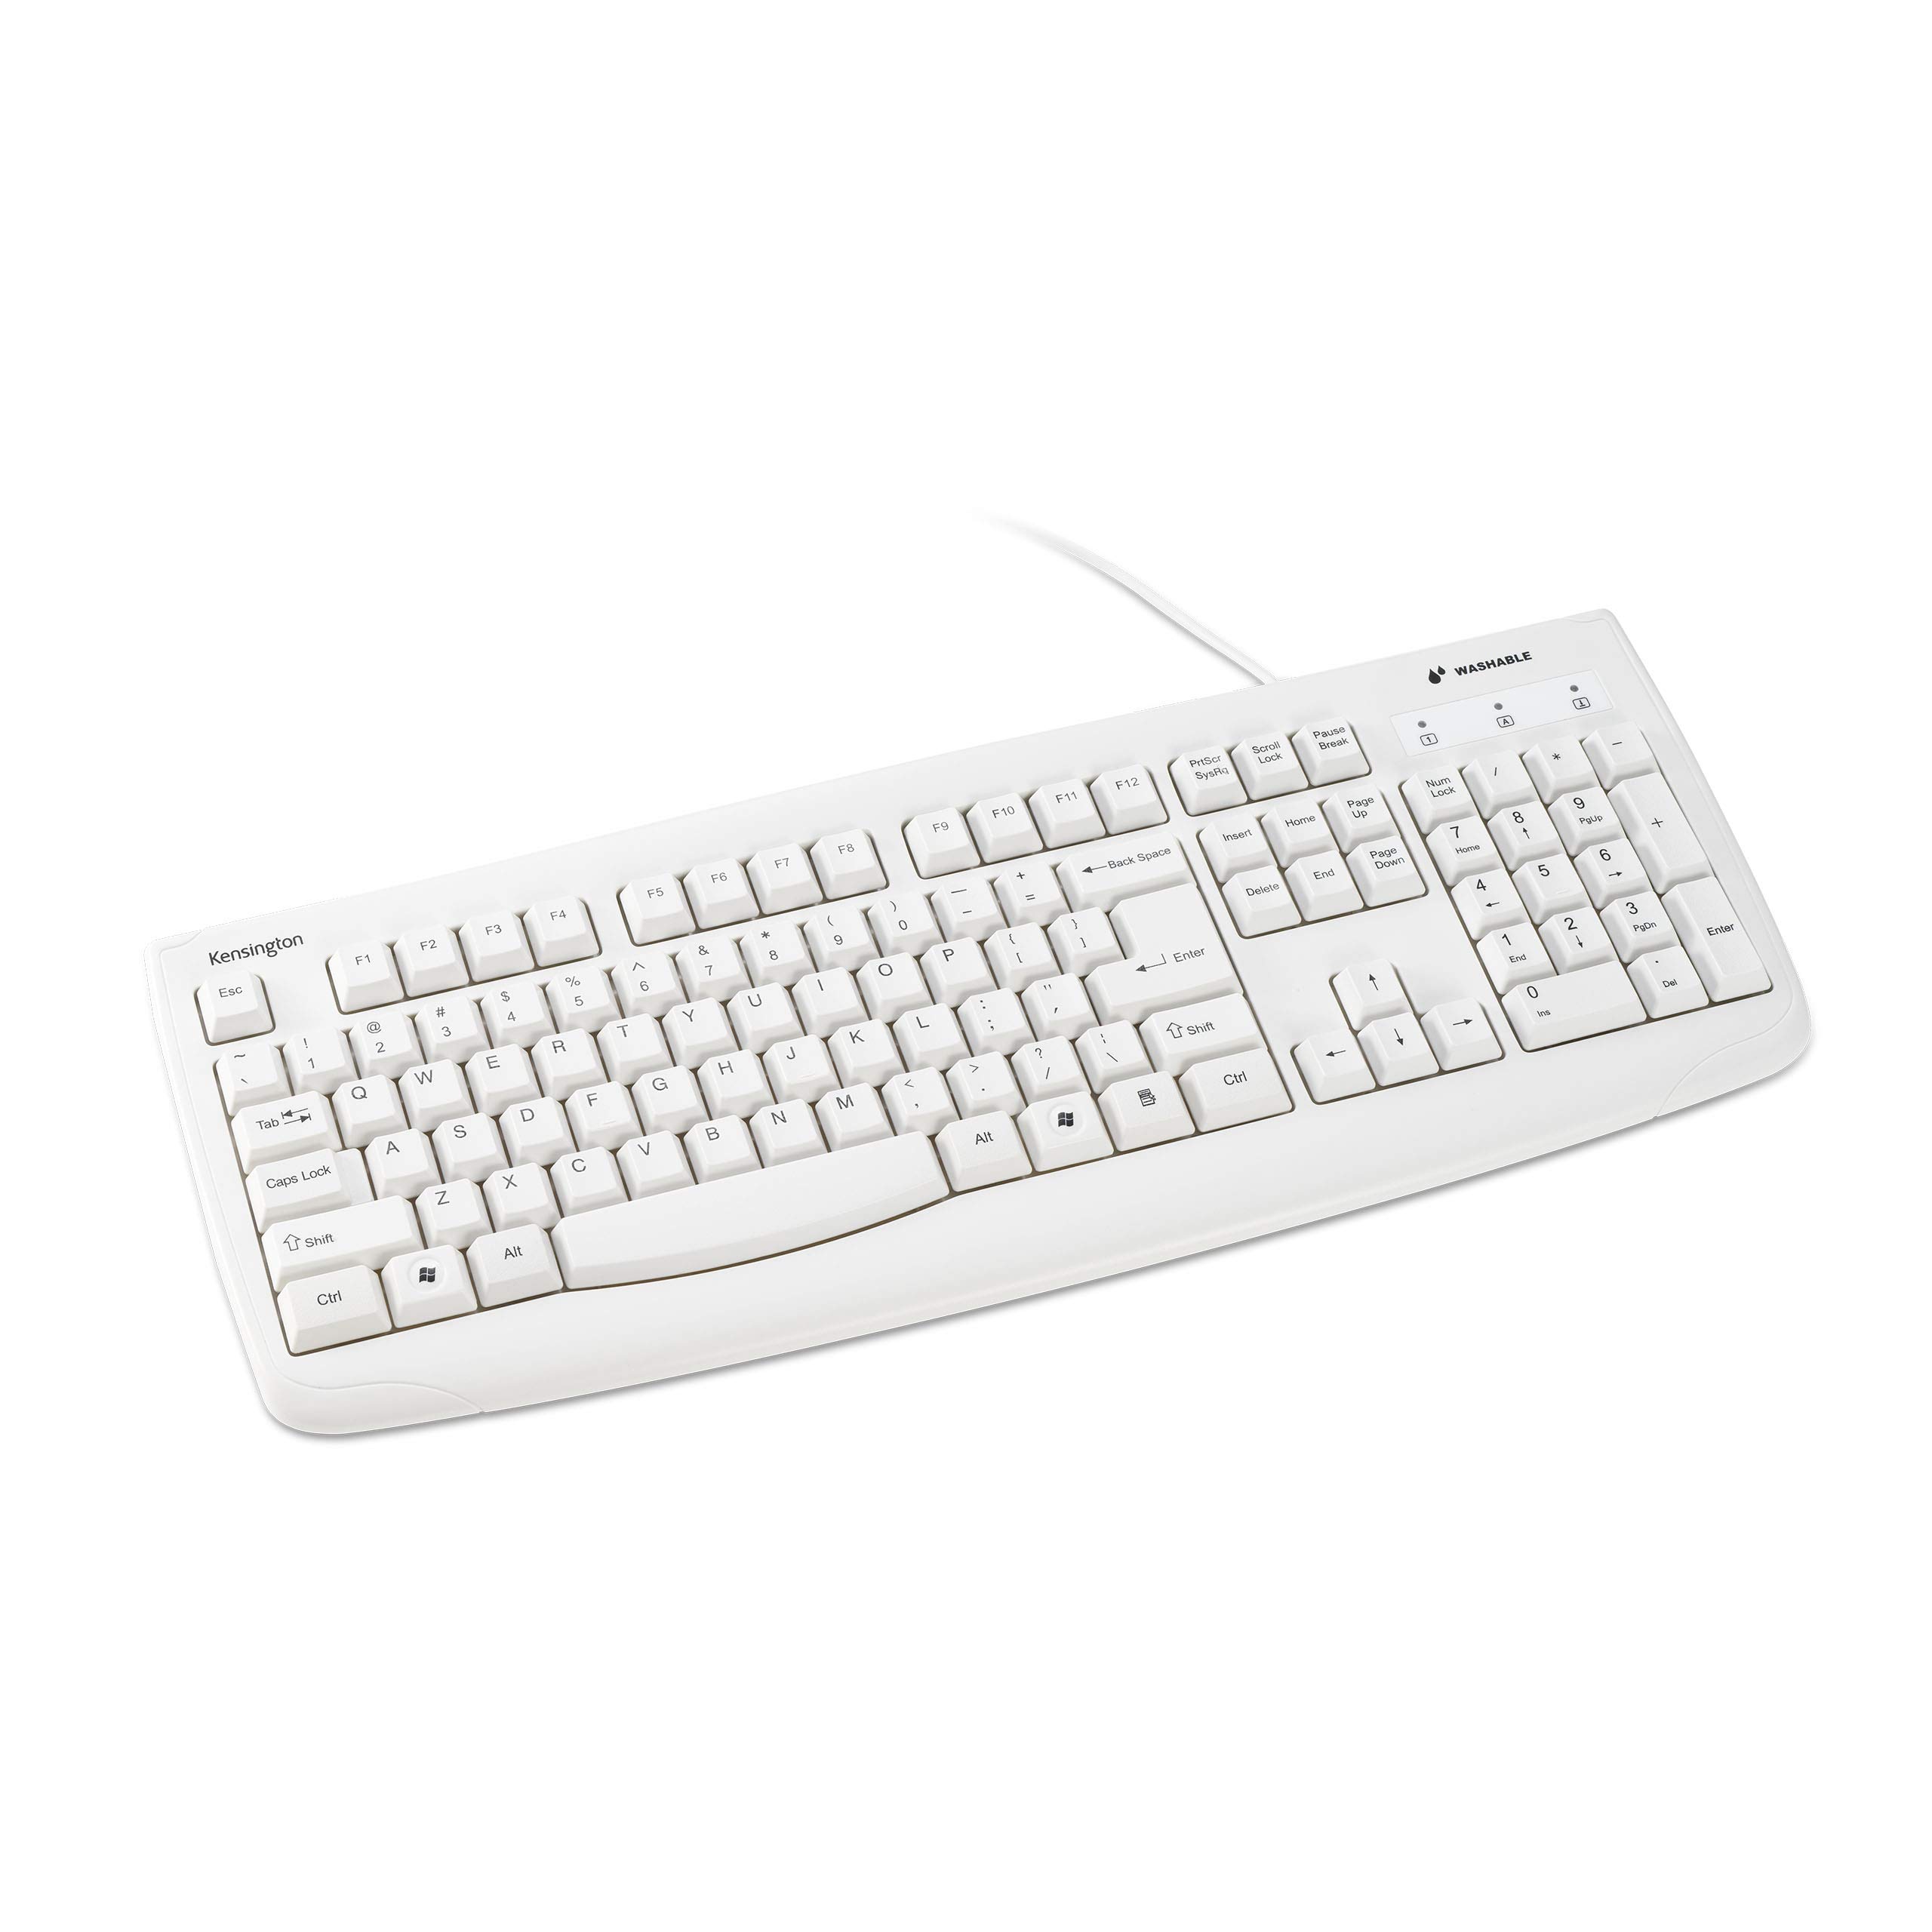 Kensington Pro Fit USB Washable Keyboard, White (K64406US)